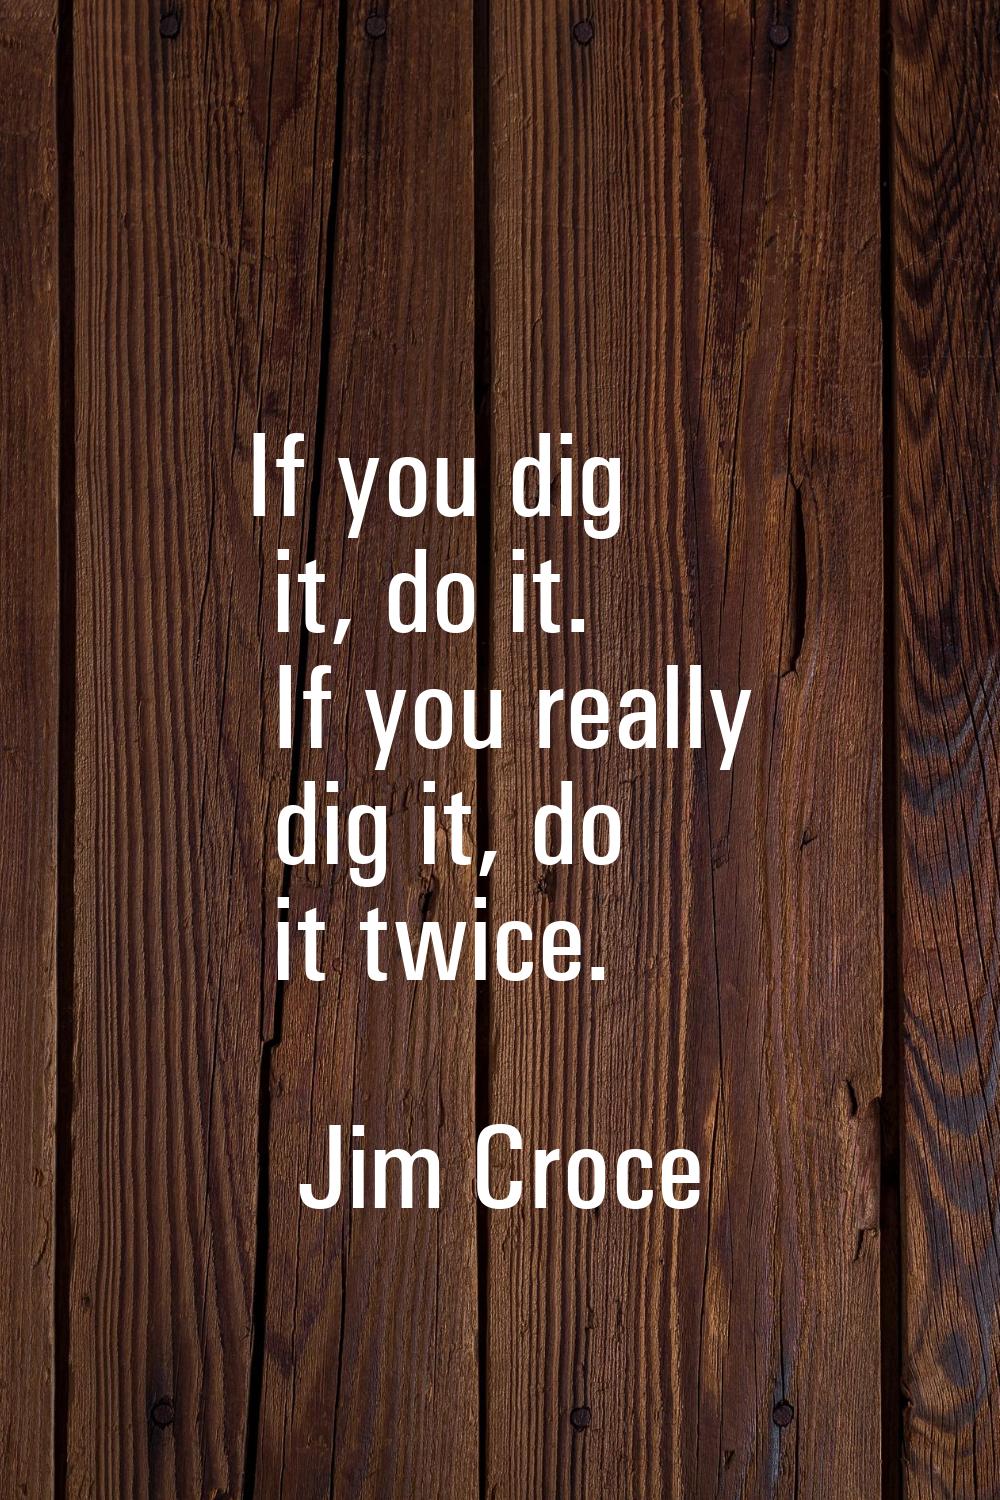 If you dig it, do it. If you really dig it, do it twice.